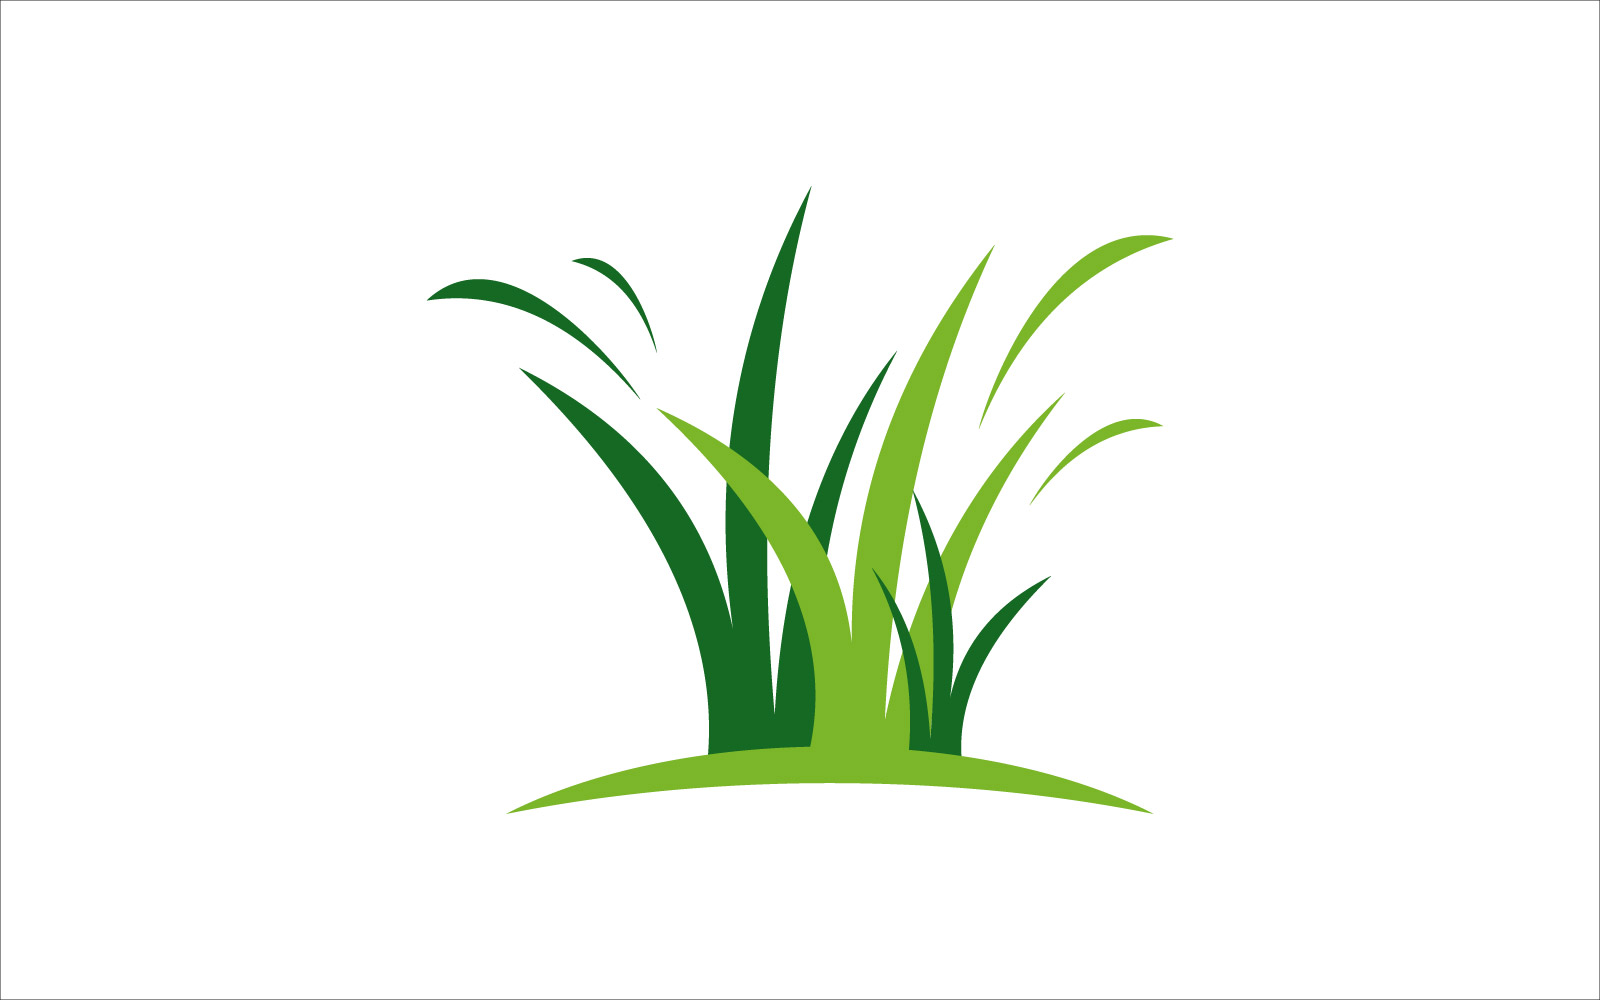 Green grass vector template